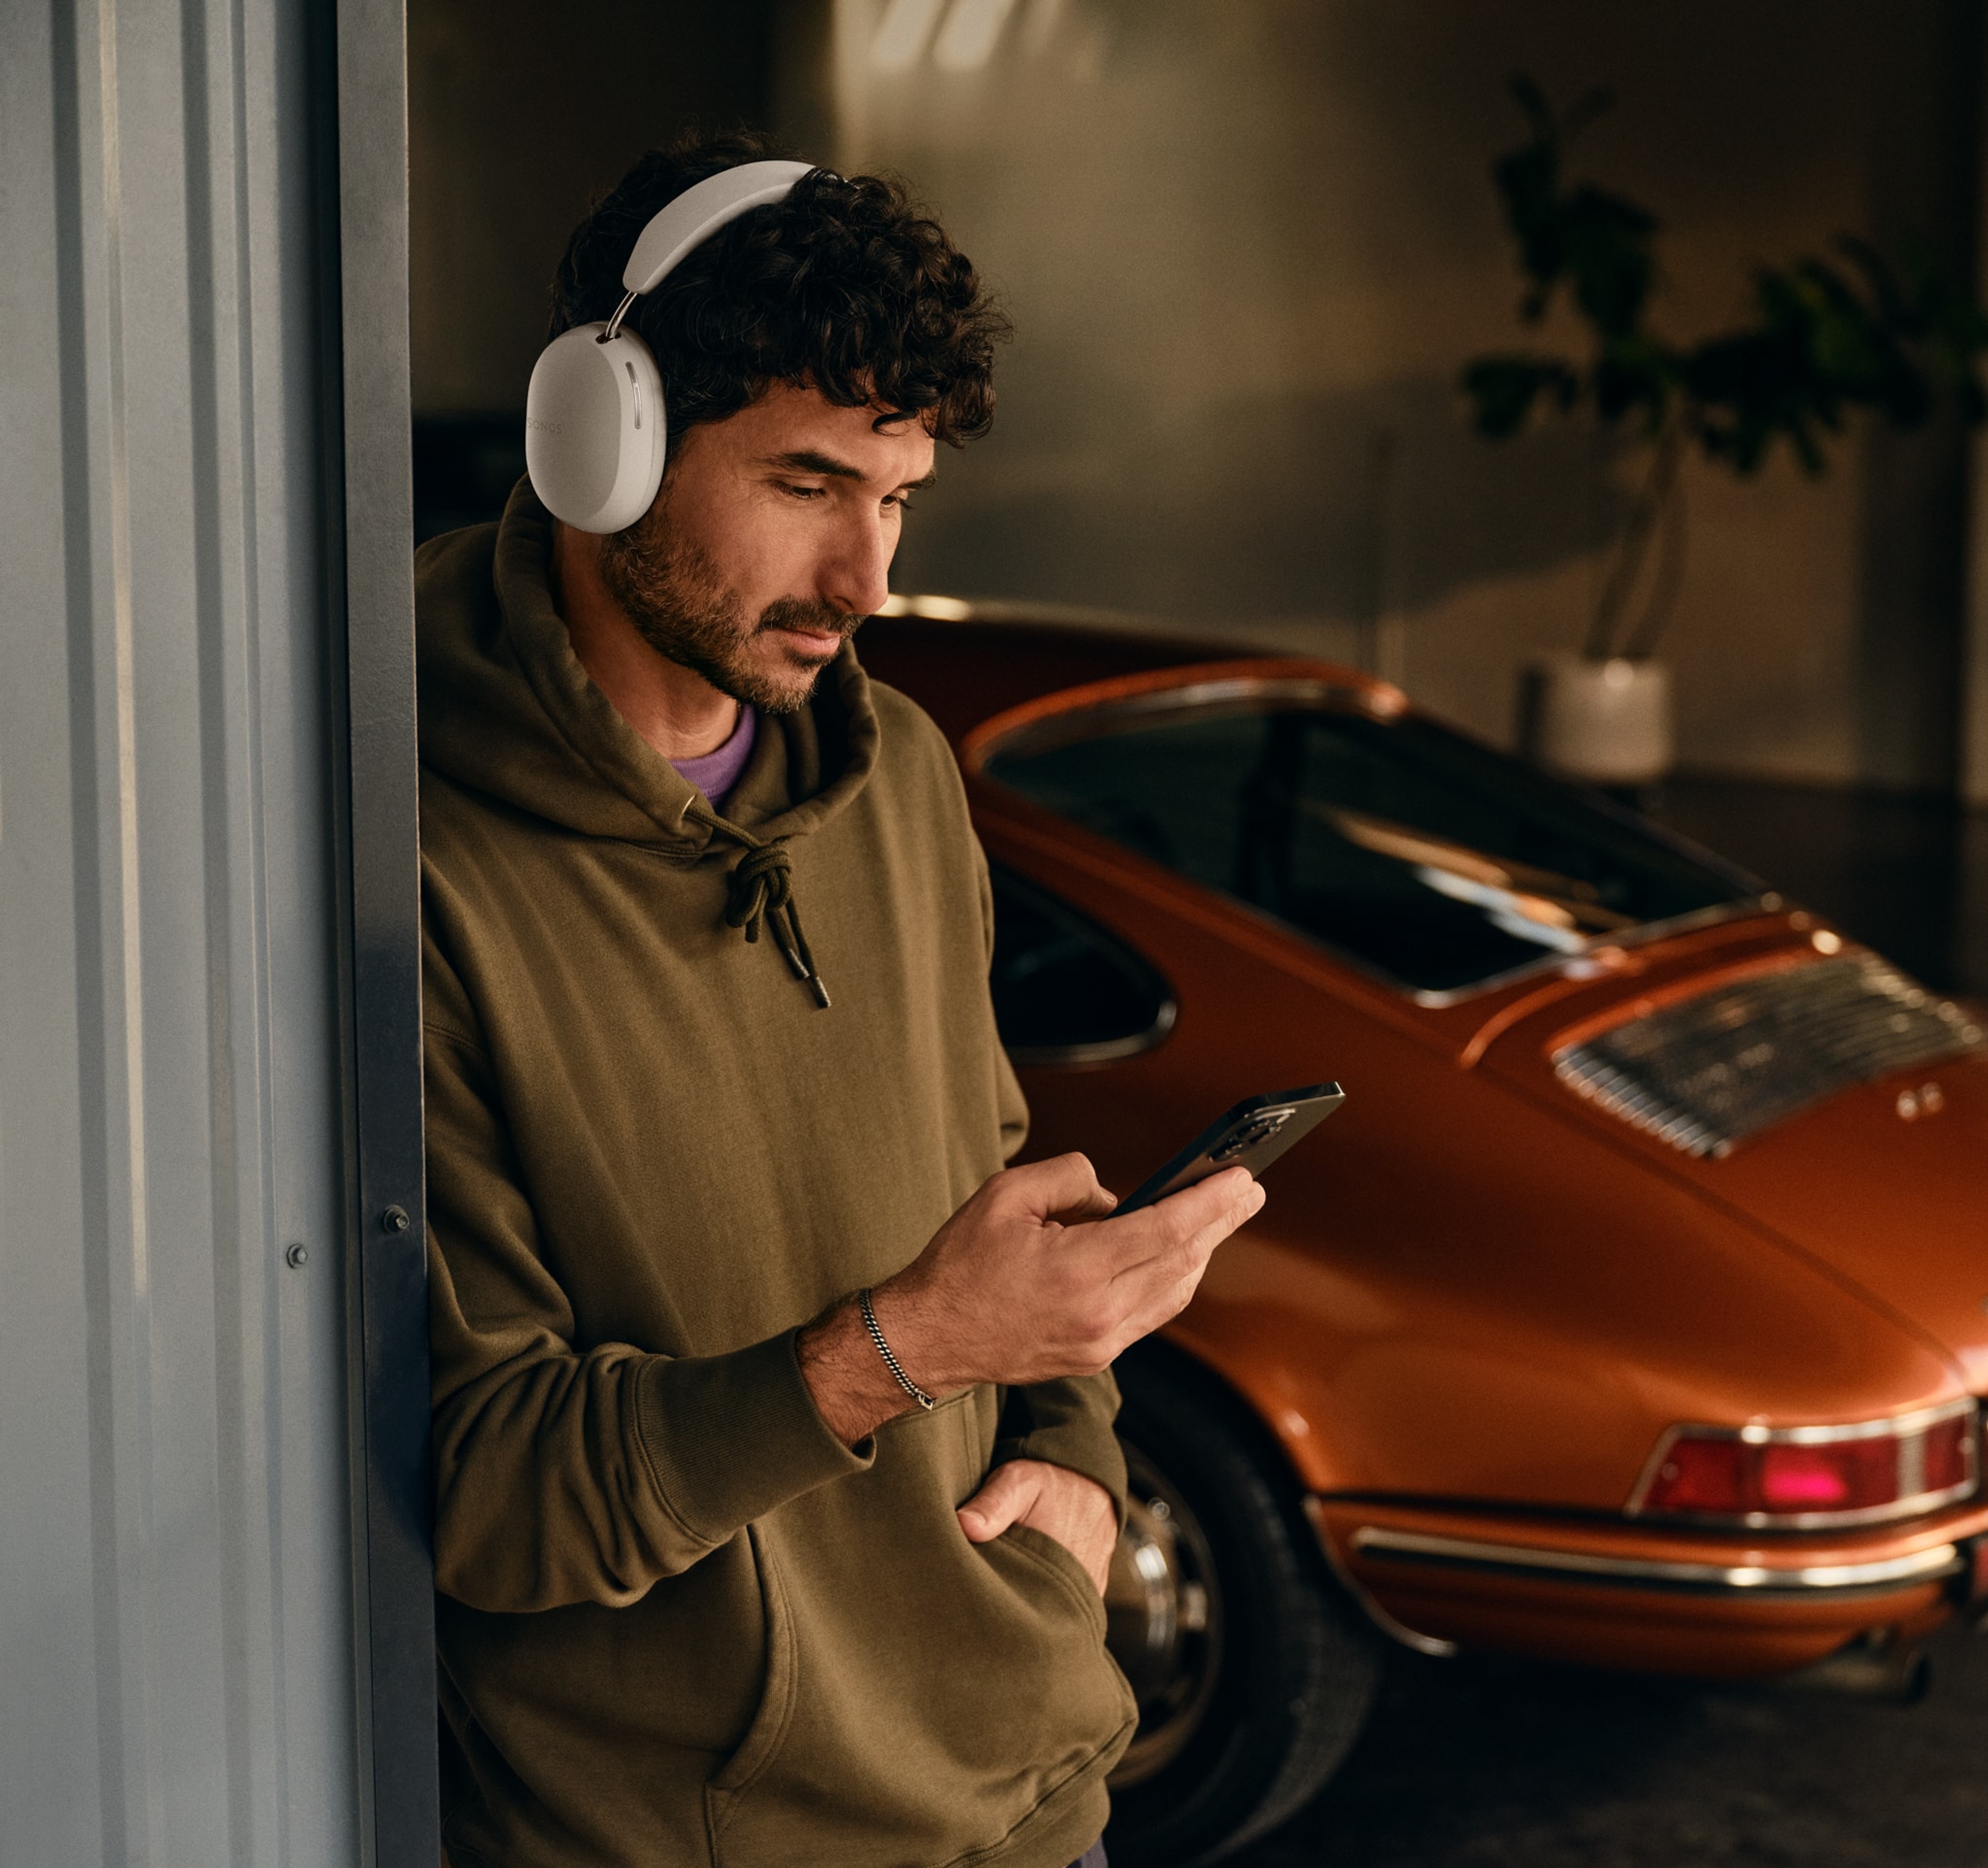 Osoba przy samochodzie, korzystająca z telefonu i z założonymi słuchawkami Sonos Ace w kolorze białym